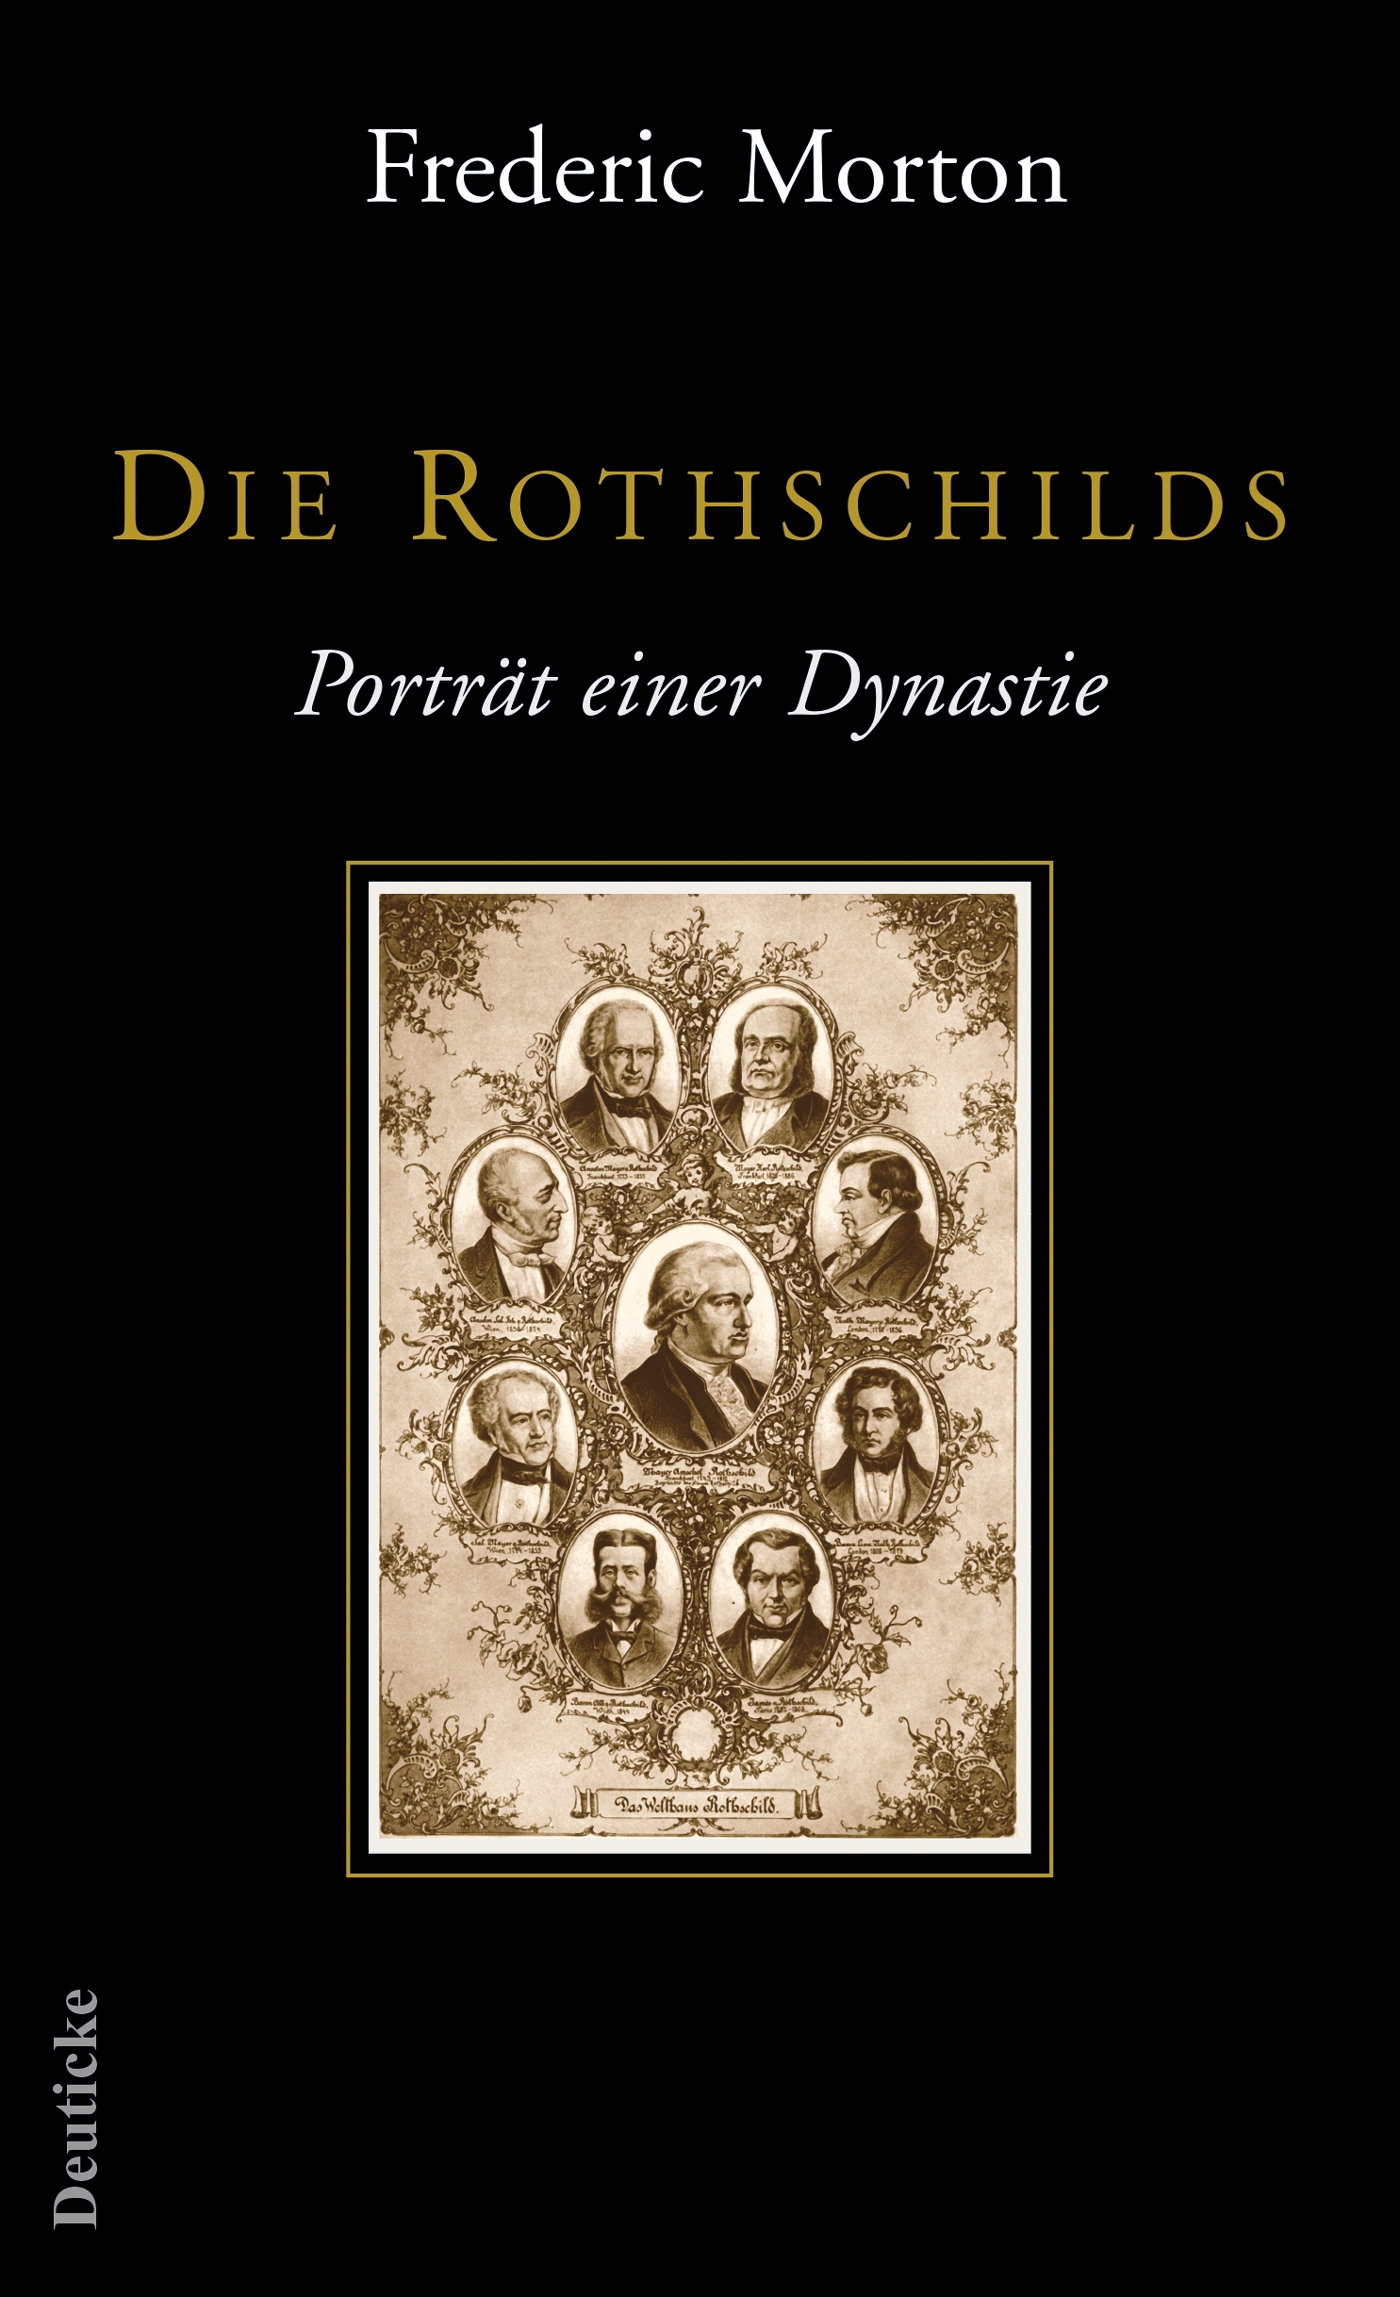 Die Rothschilds Frederic Morton - Bild 1 von 1